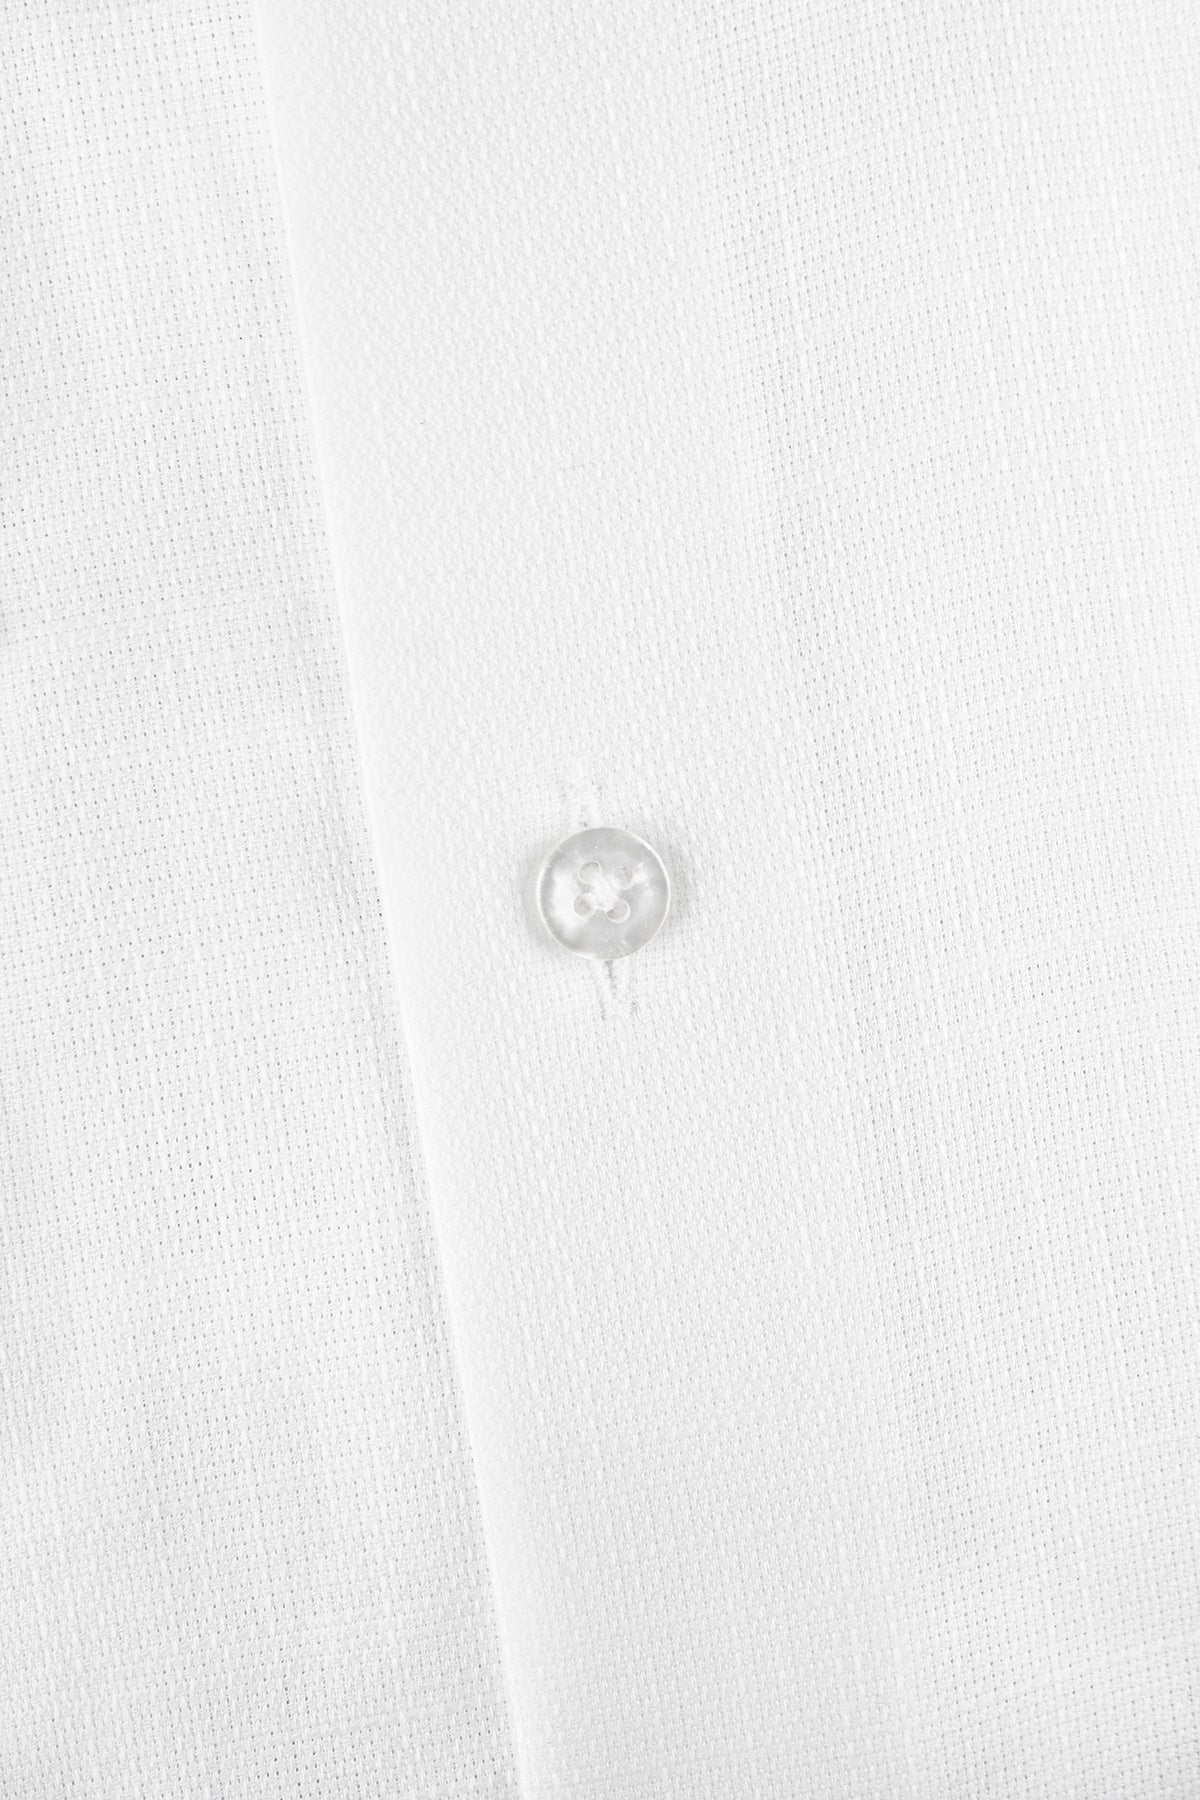 White regular fit button down short sleeve shirt